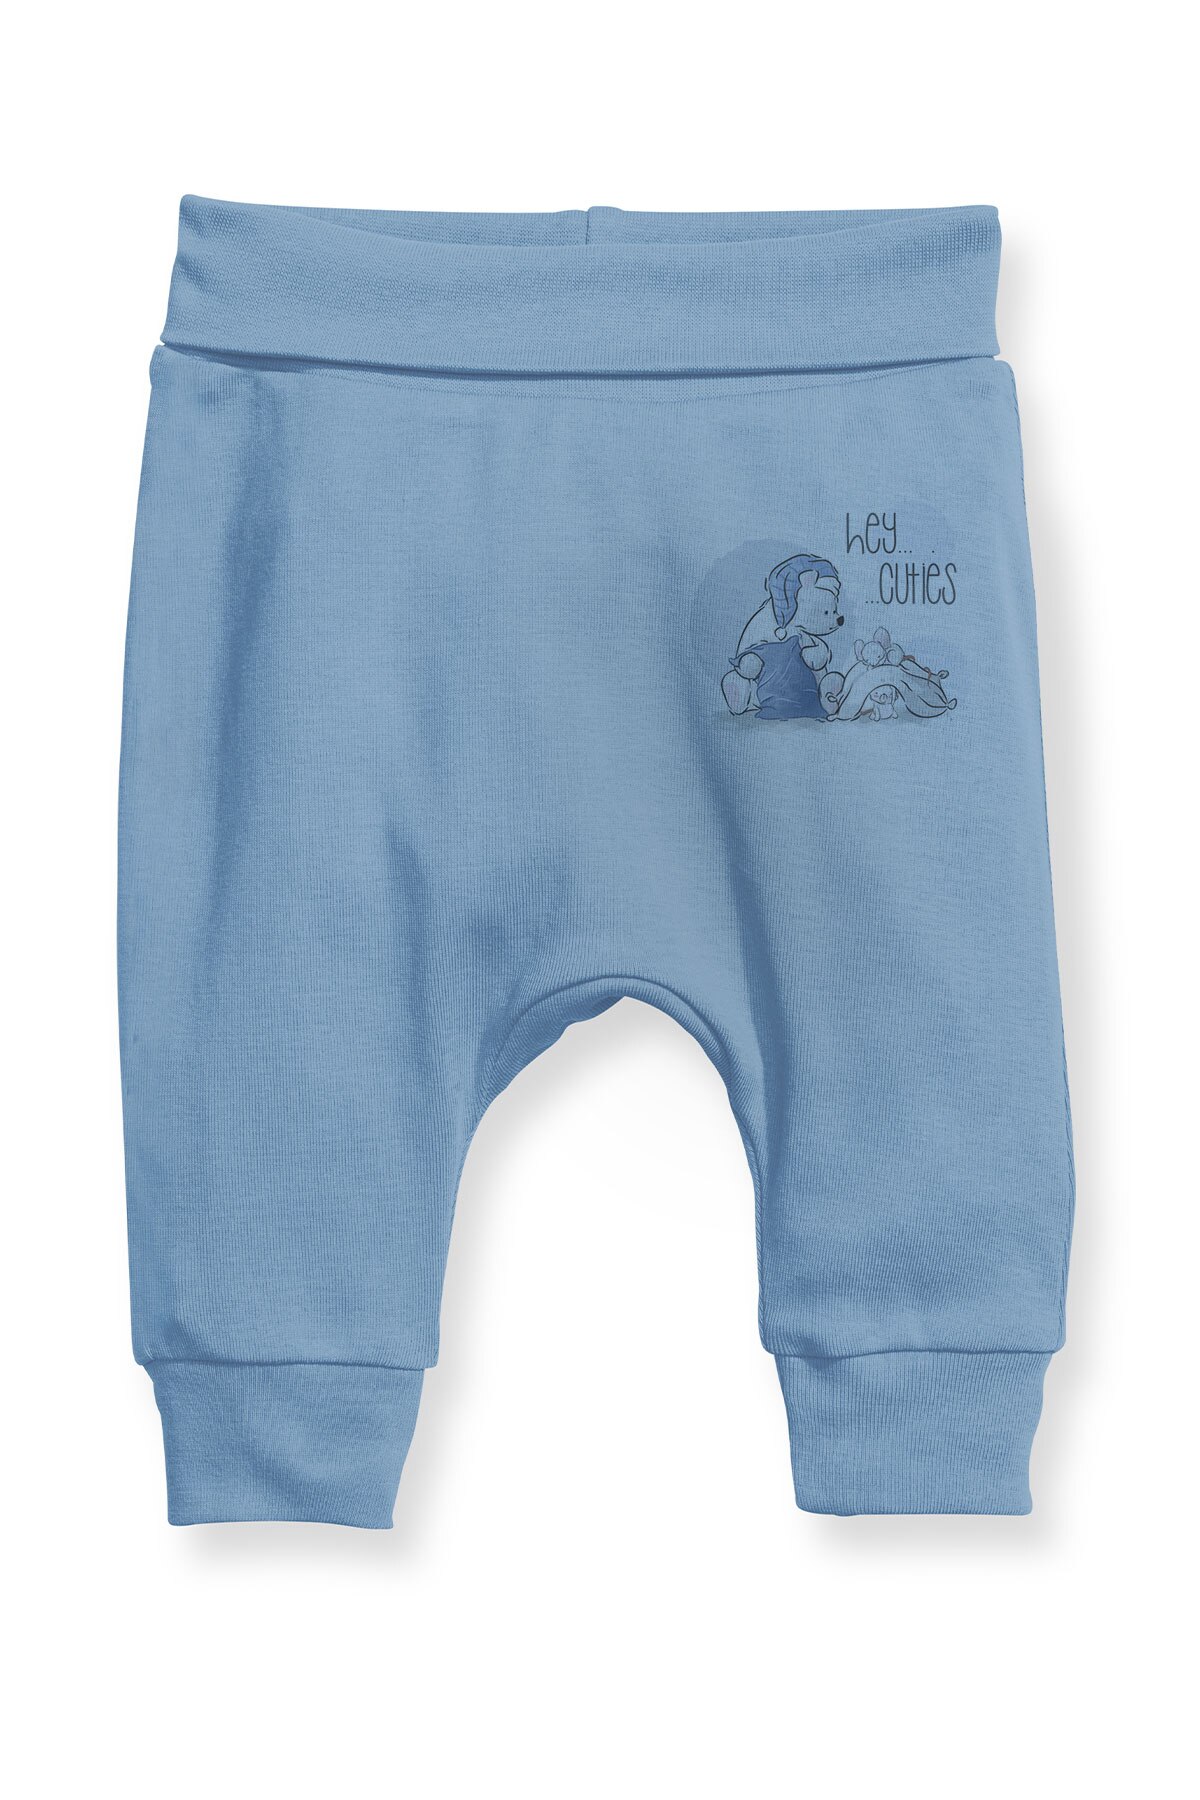 Angemiel baby sovende mus og bjørn baby dreng harembukser pantalon blå